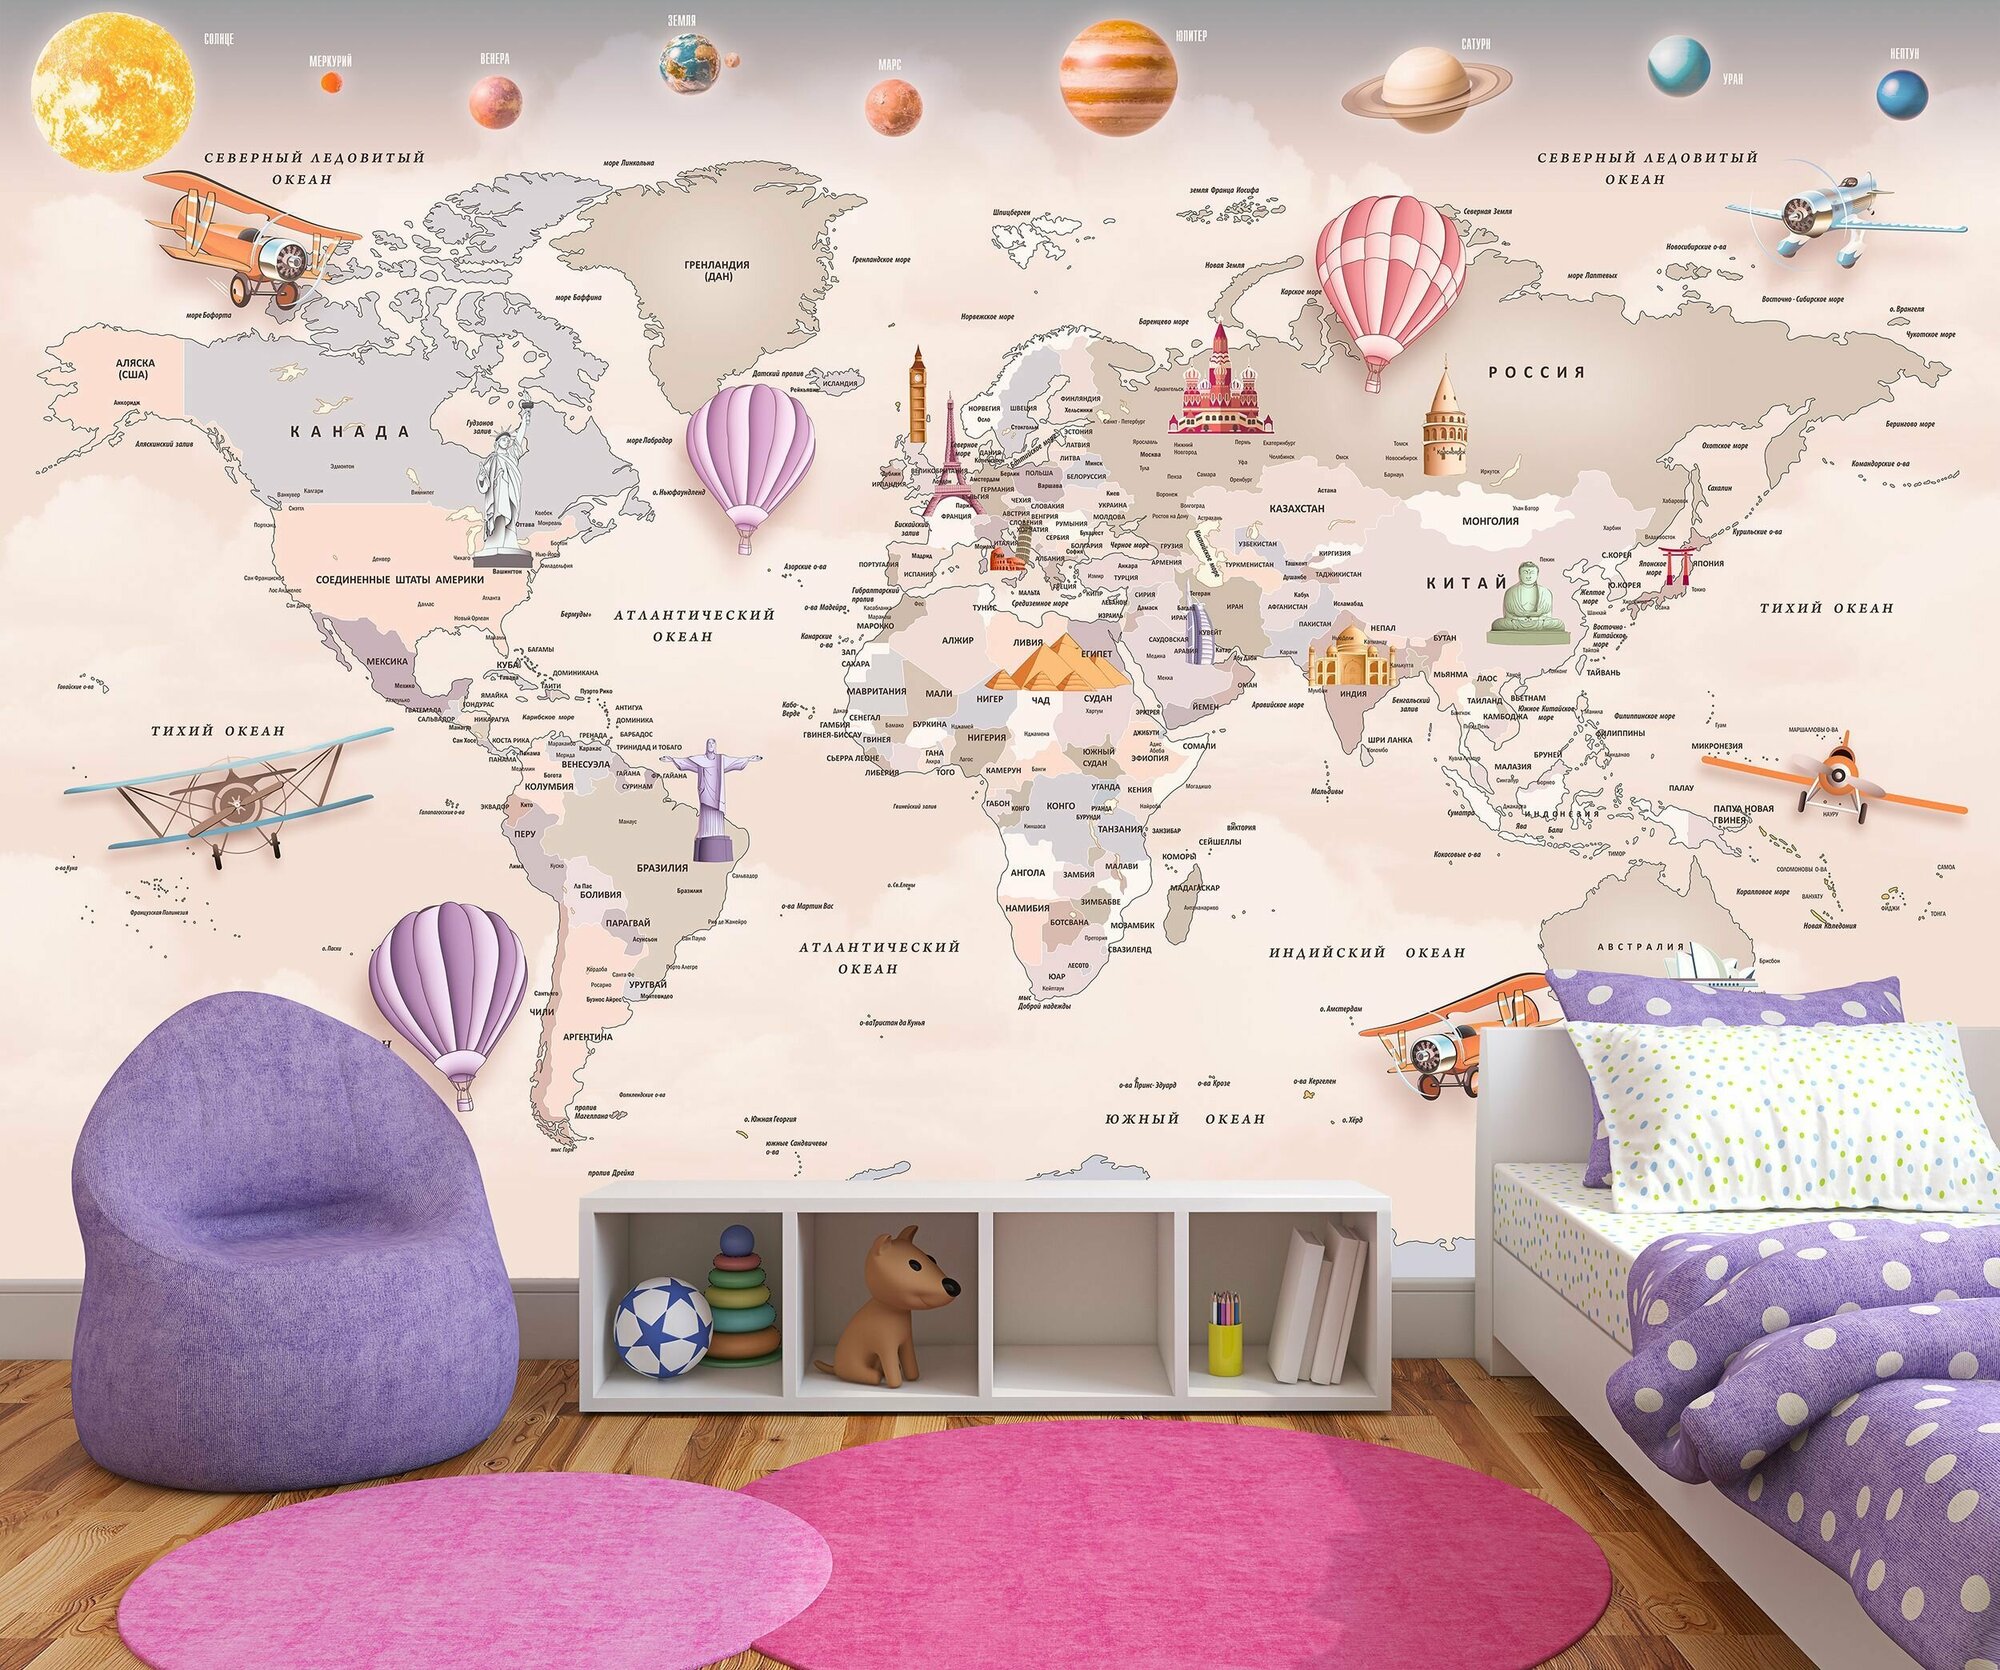 Фотообои флизелиновые 200х130см. на стену. Серия MAPS ARTDELUXE. 3д детская карта мира и планеты. Обои дизайнерские, эксклюзивные для детской комнаты.